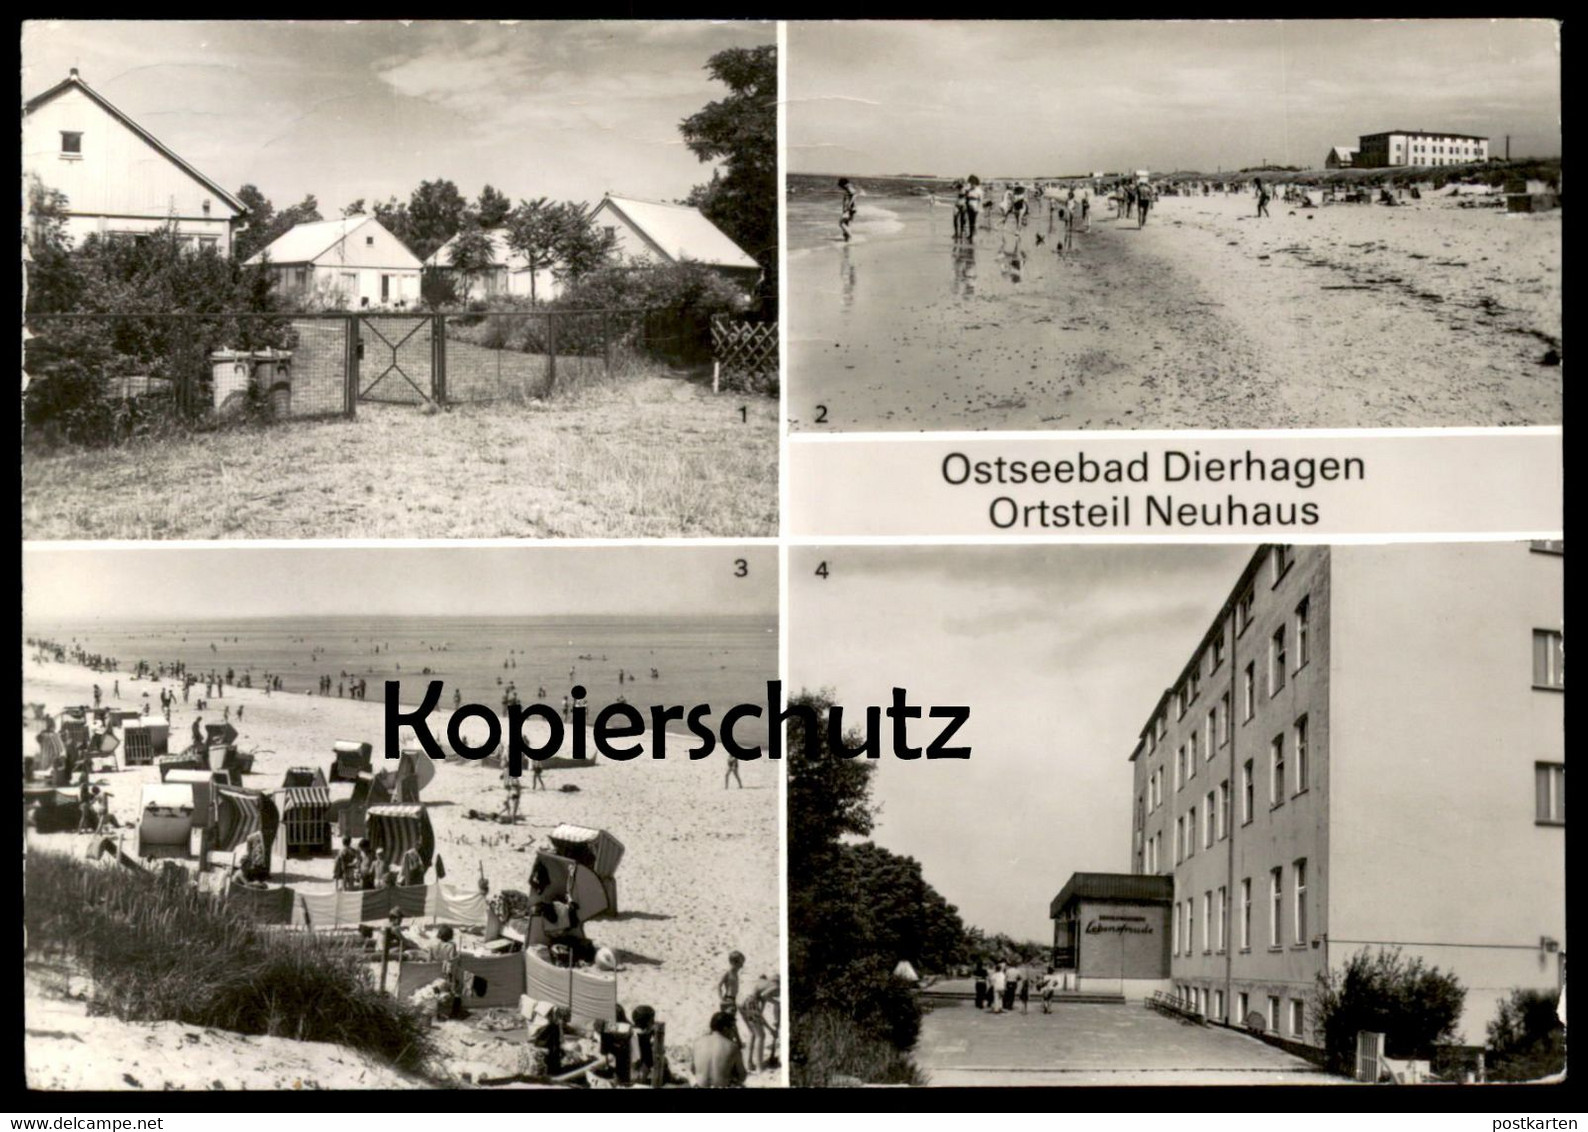 ÄLTERE POSTKARTE OSTSEEBAD DIERHAGEN ORTSTEIL NEUHAUS BETRIEBSFERIENHÄUSER FDGB HEIM LEBENSFREUDE Ansichtskarte Postcard - Fischland/Darss